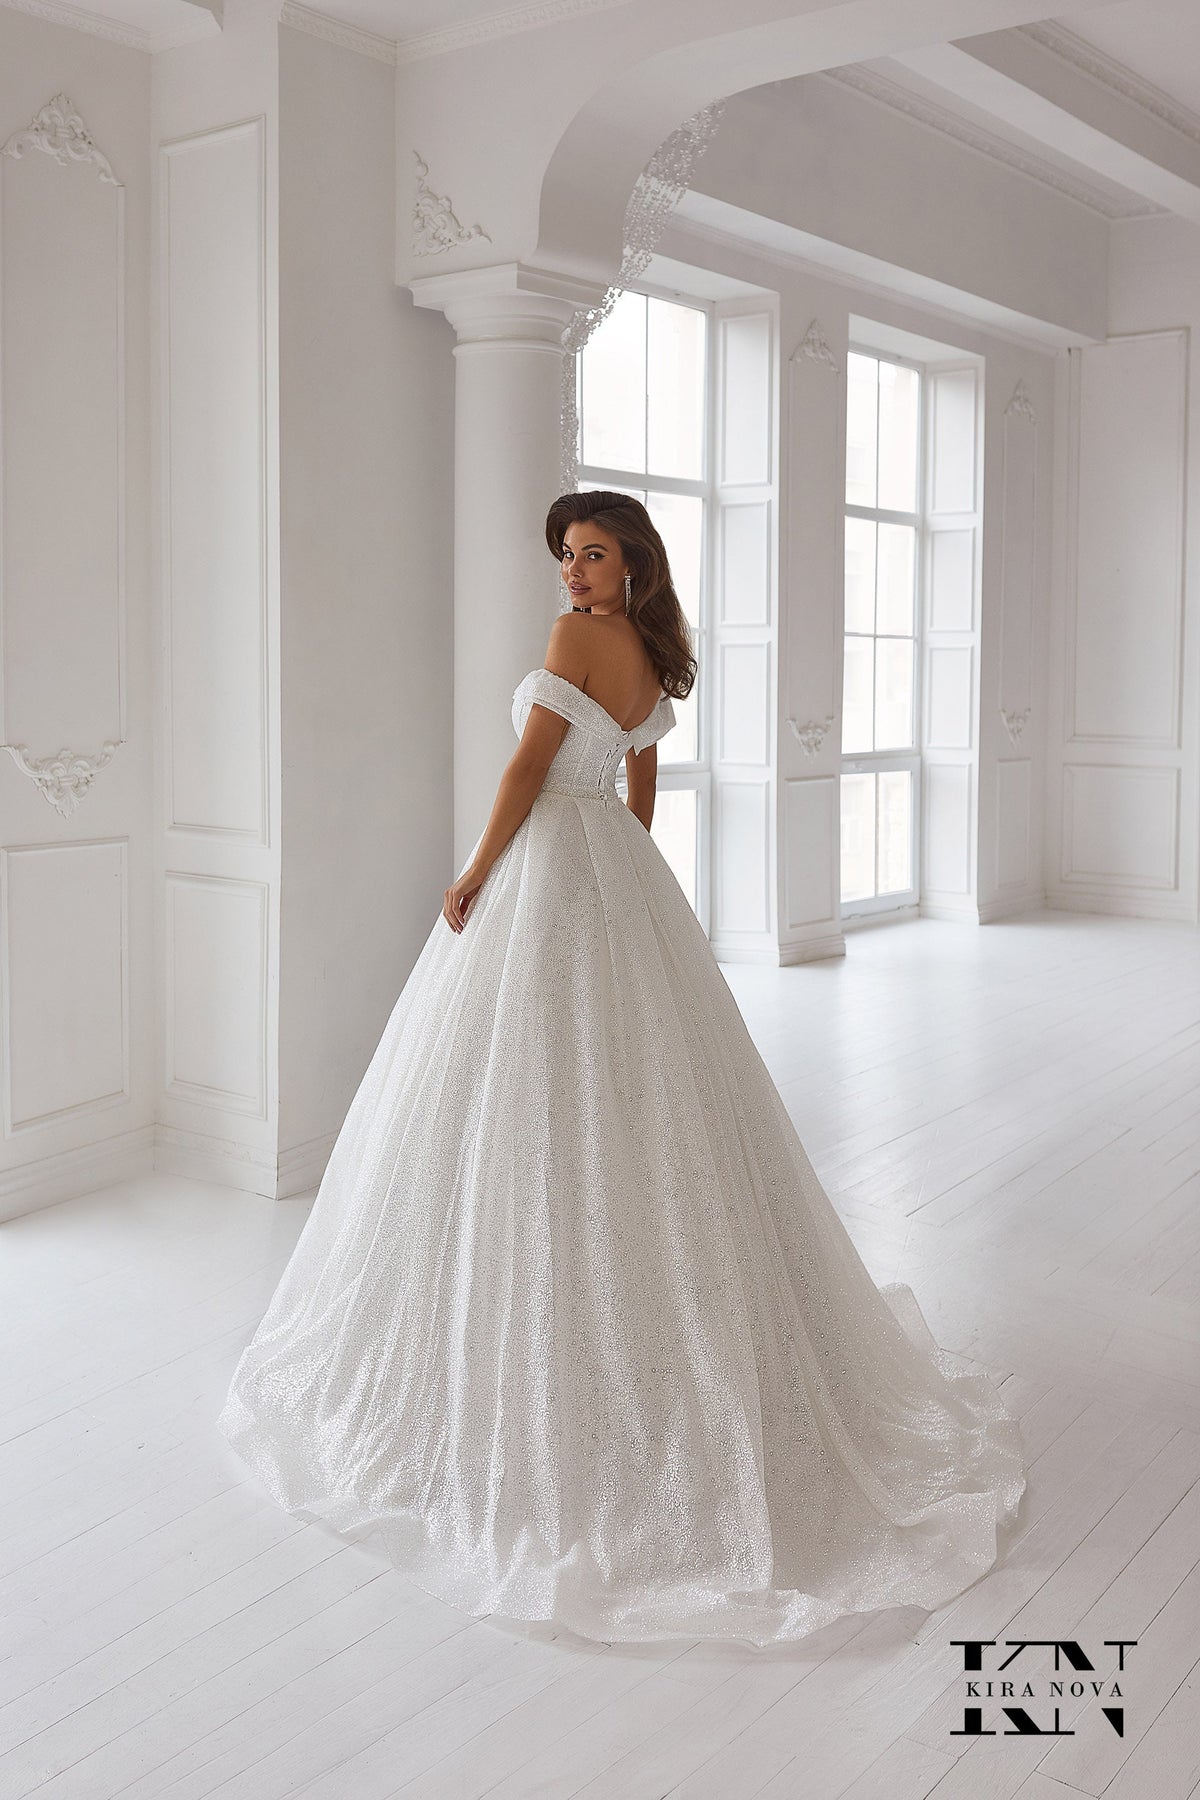 Classic Full Aline Glitter Sleeveless Off the Shoulder Full Ball Gown Wedding Dress Bridal Gown V Neck Open Back Minimalist Design